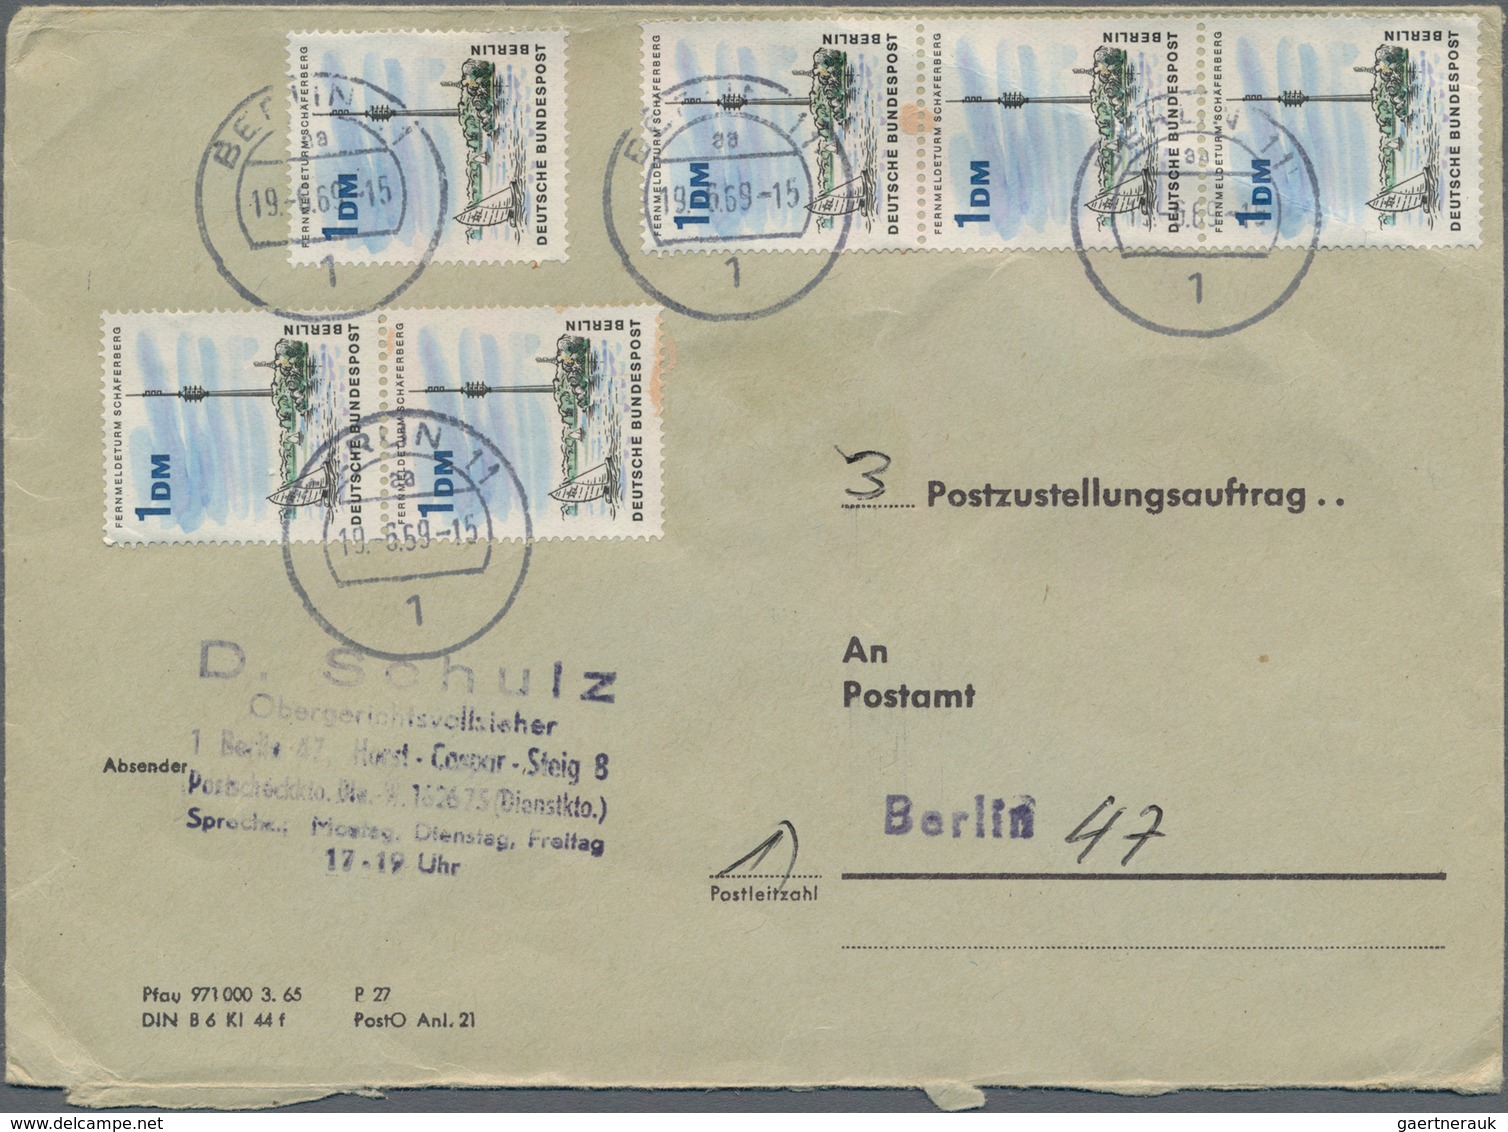 Berlin: 1966, 6 Stück 1 DM Fernmeldeturm Auf Postzustellungsauftrag In Berlin Gelaufen, Tolle MeF, K - Covers & Documents